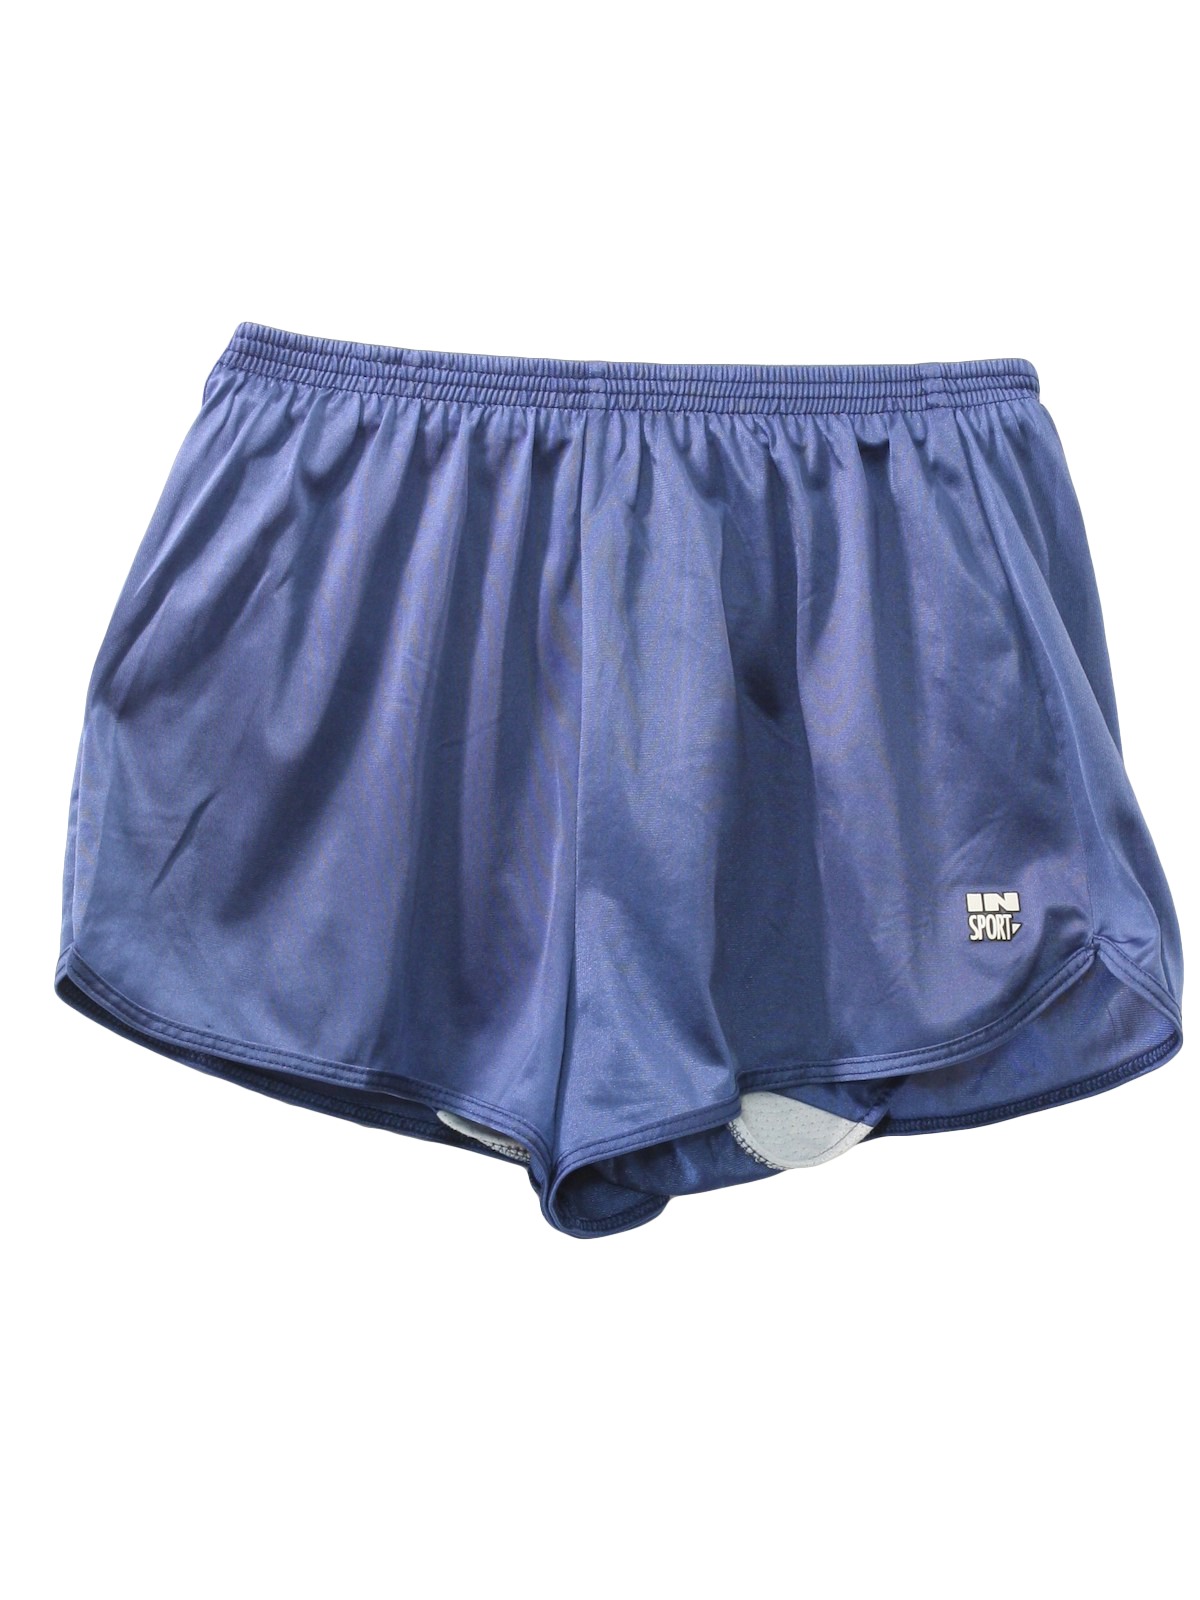 Retro 90's Shorts: 90s -In Sport- Womens dusty dark blue shiny nylon ...